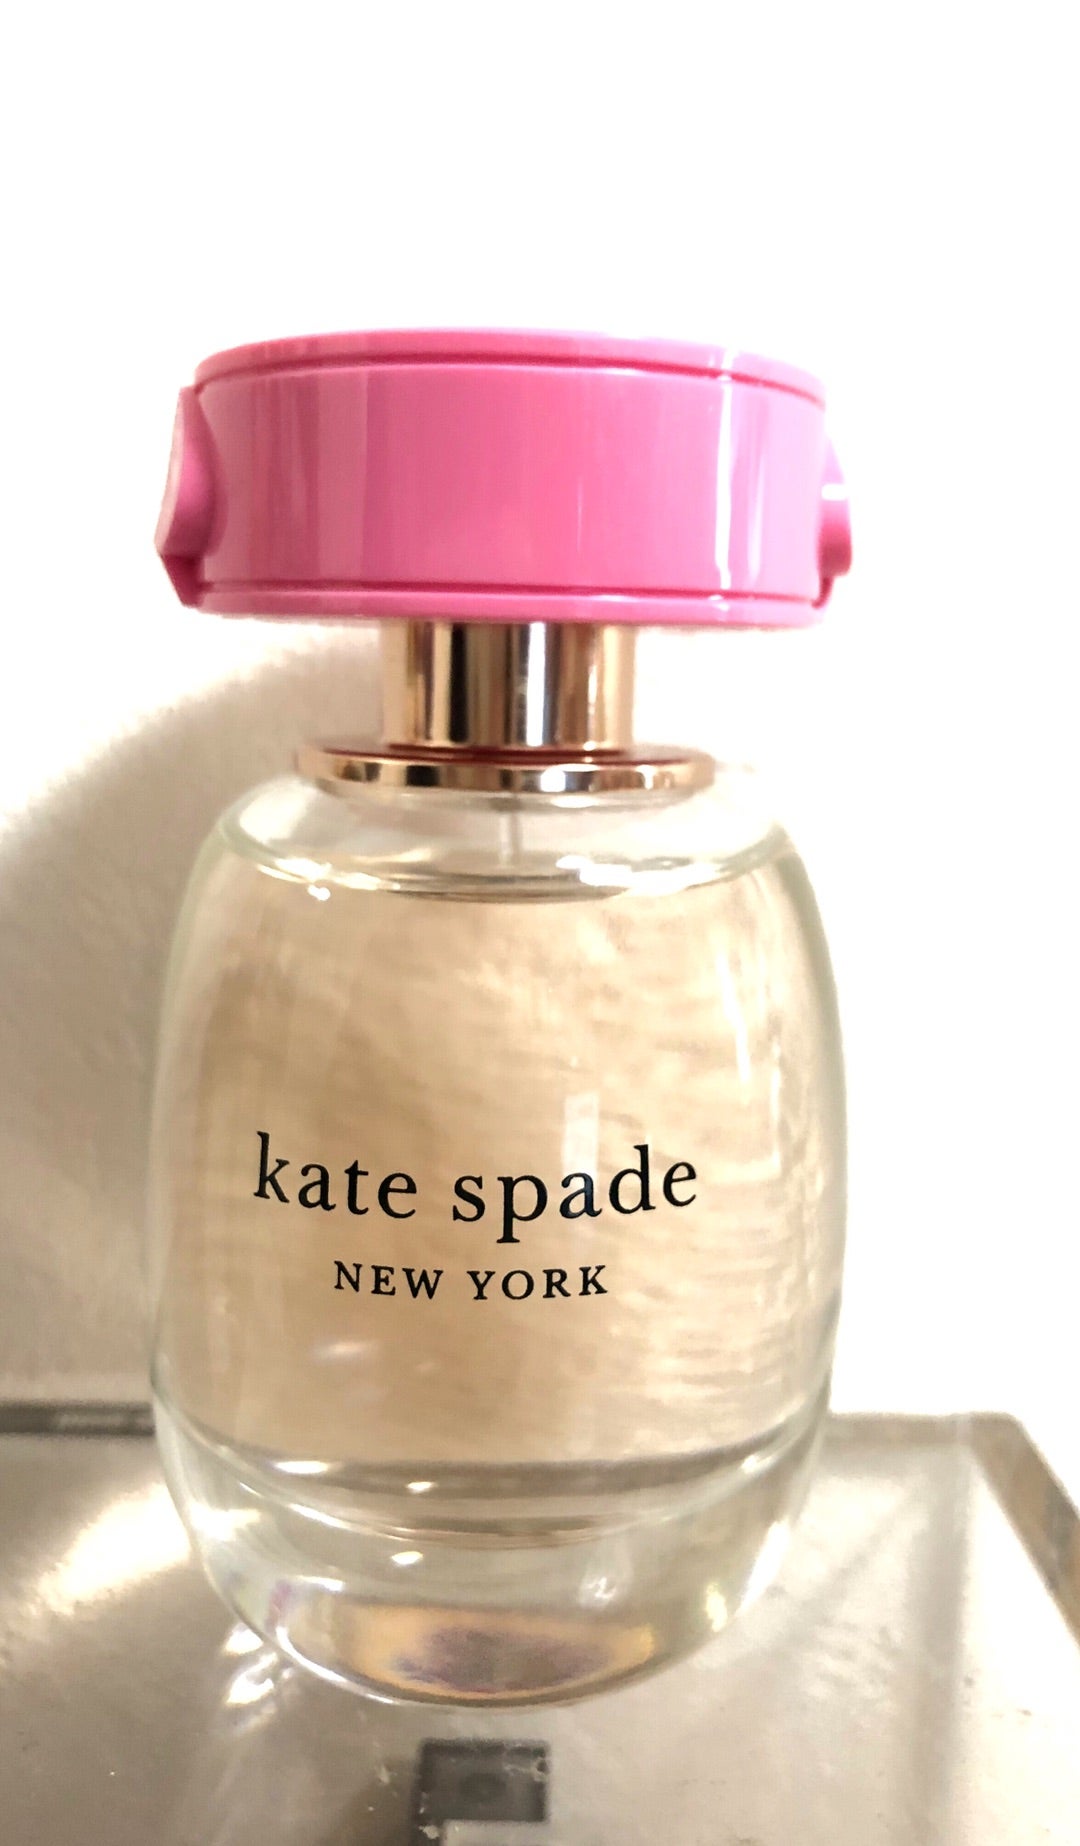 香水】Kate spade NEW YORK(ケイト・スペード ニューヨーク) | 韓国アイドルヲタクと言われる部類のブログ